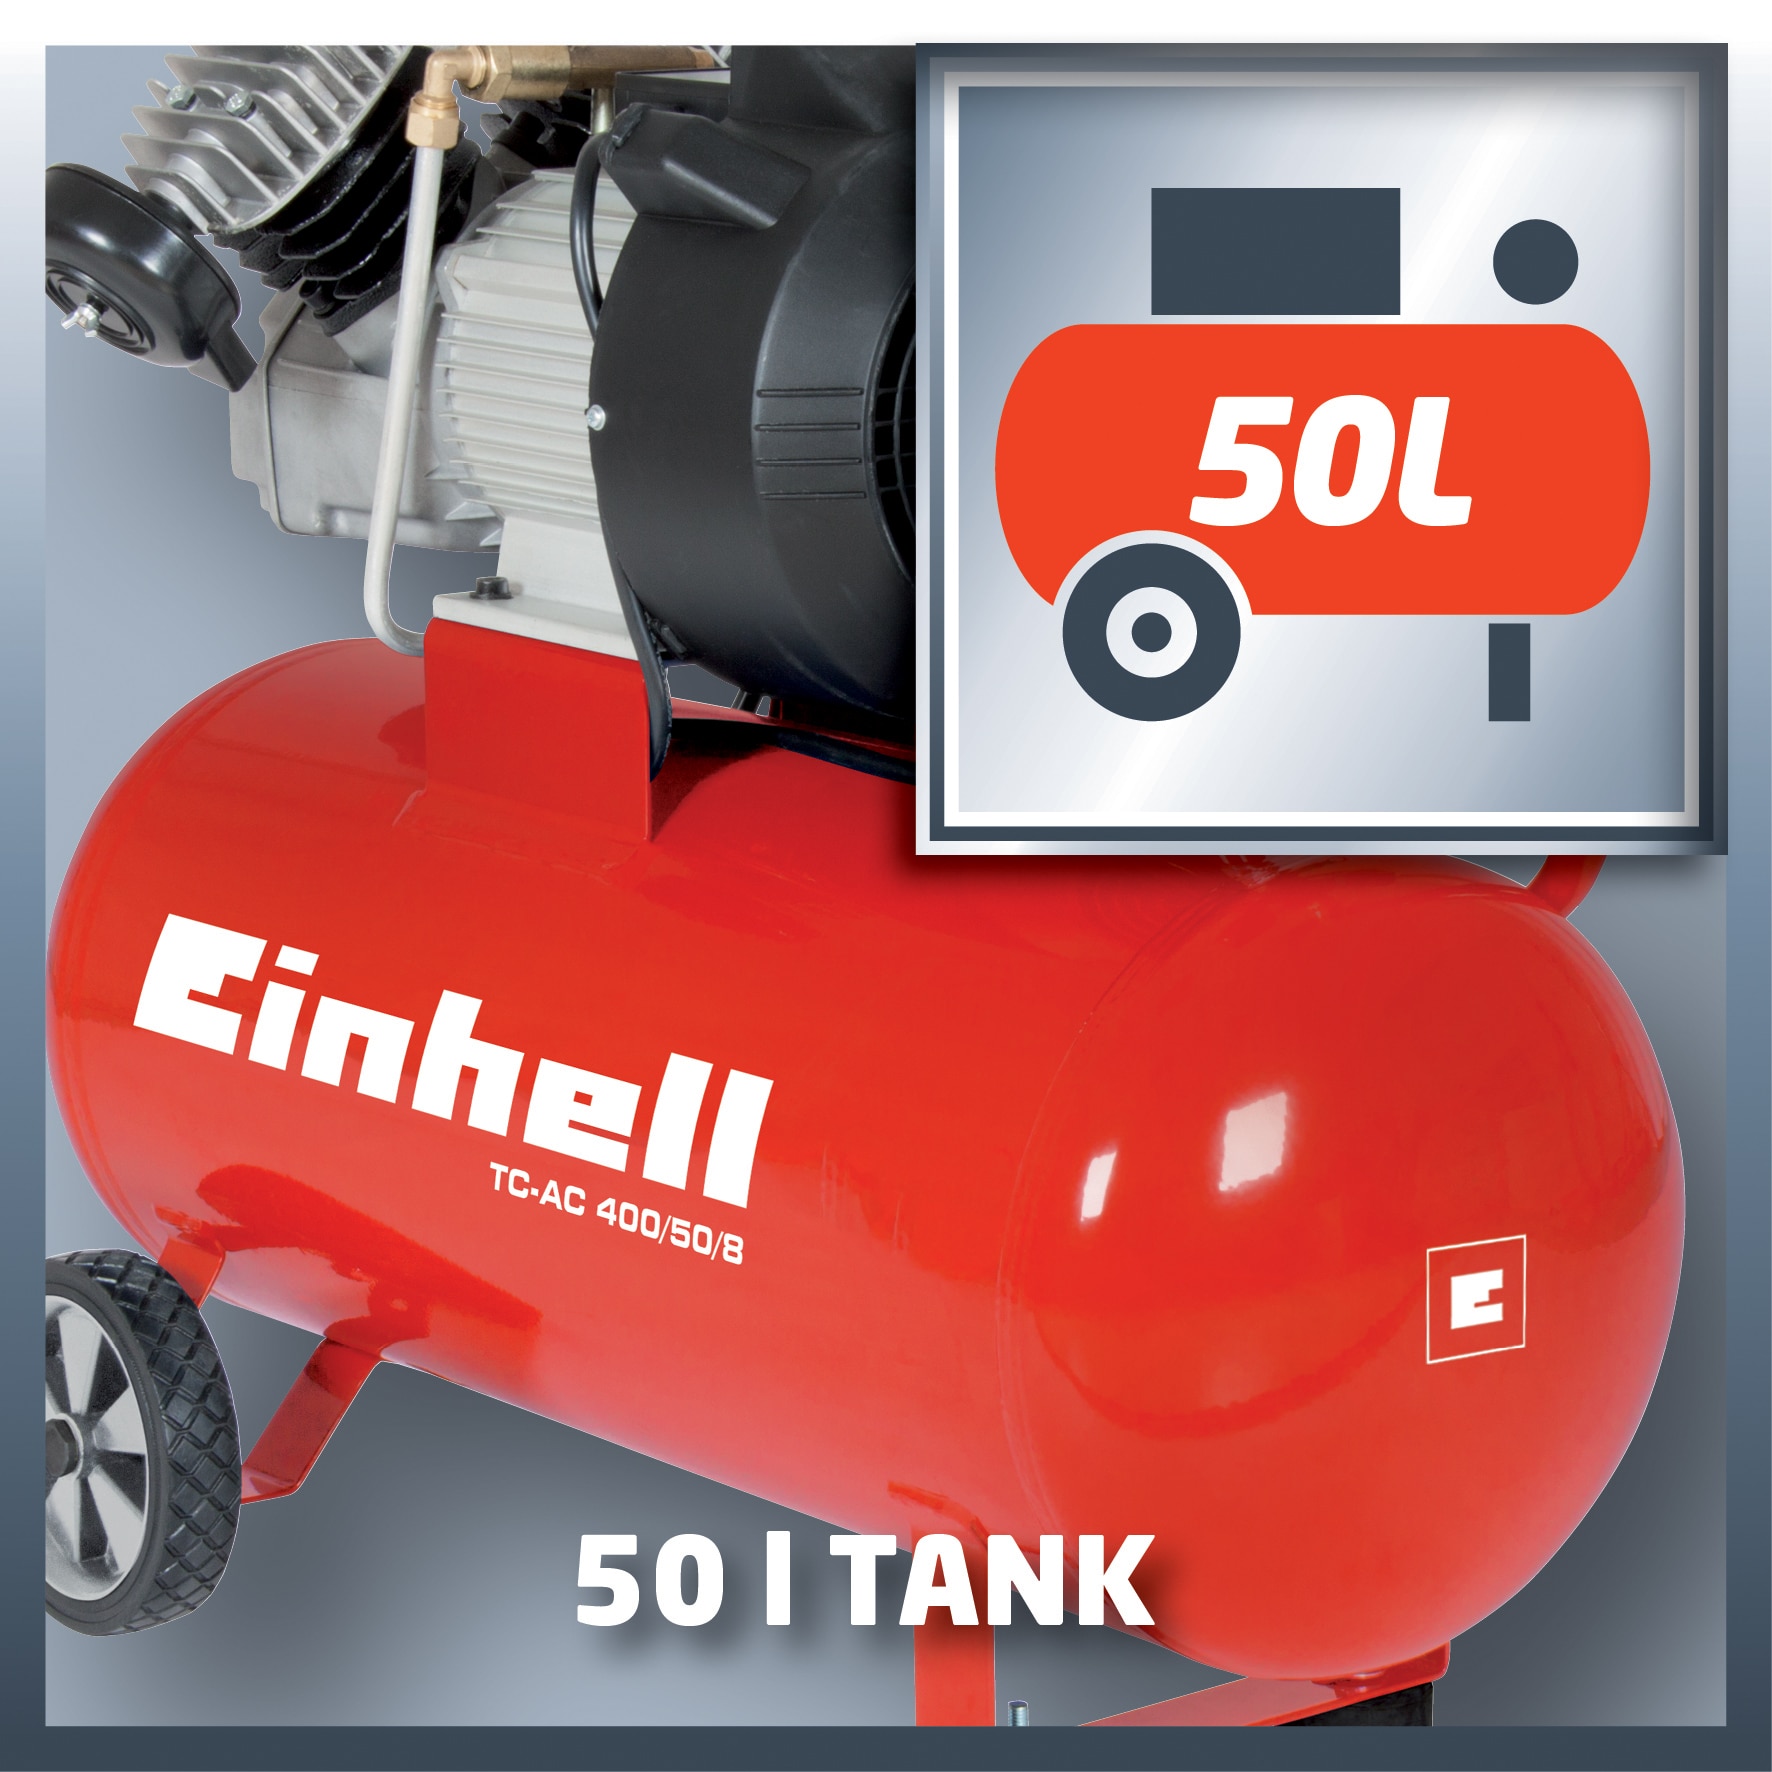 Einhell Olajos 8 400/50/8 50 bar, TC-AC l 2200W, kompresszor,